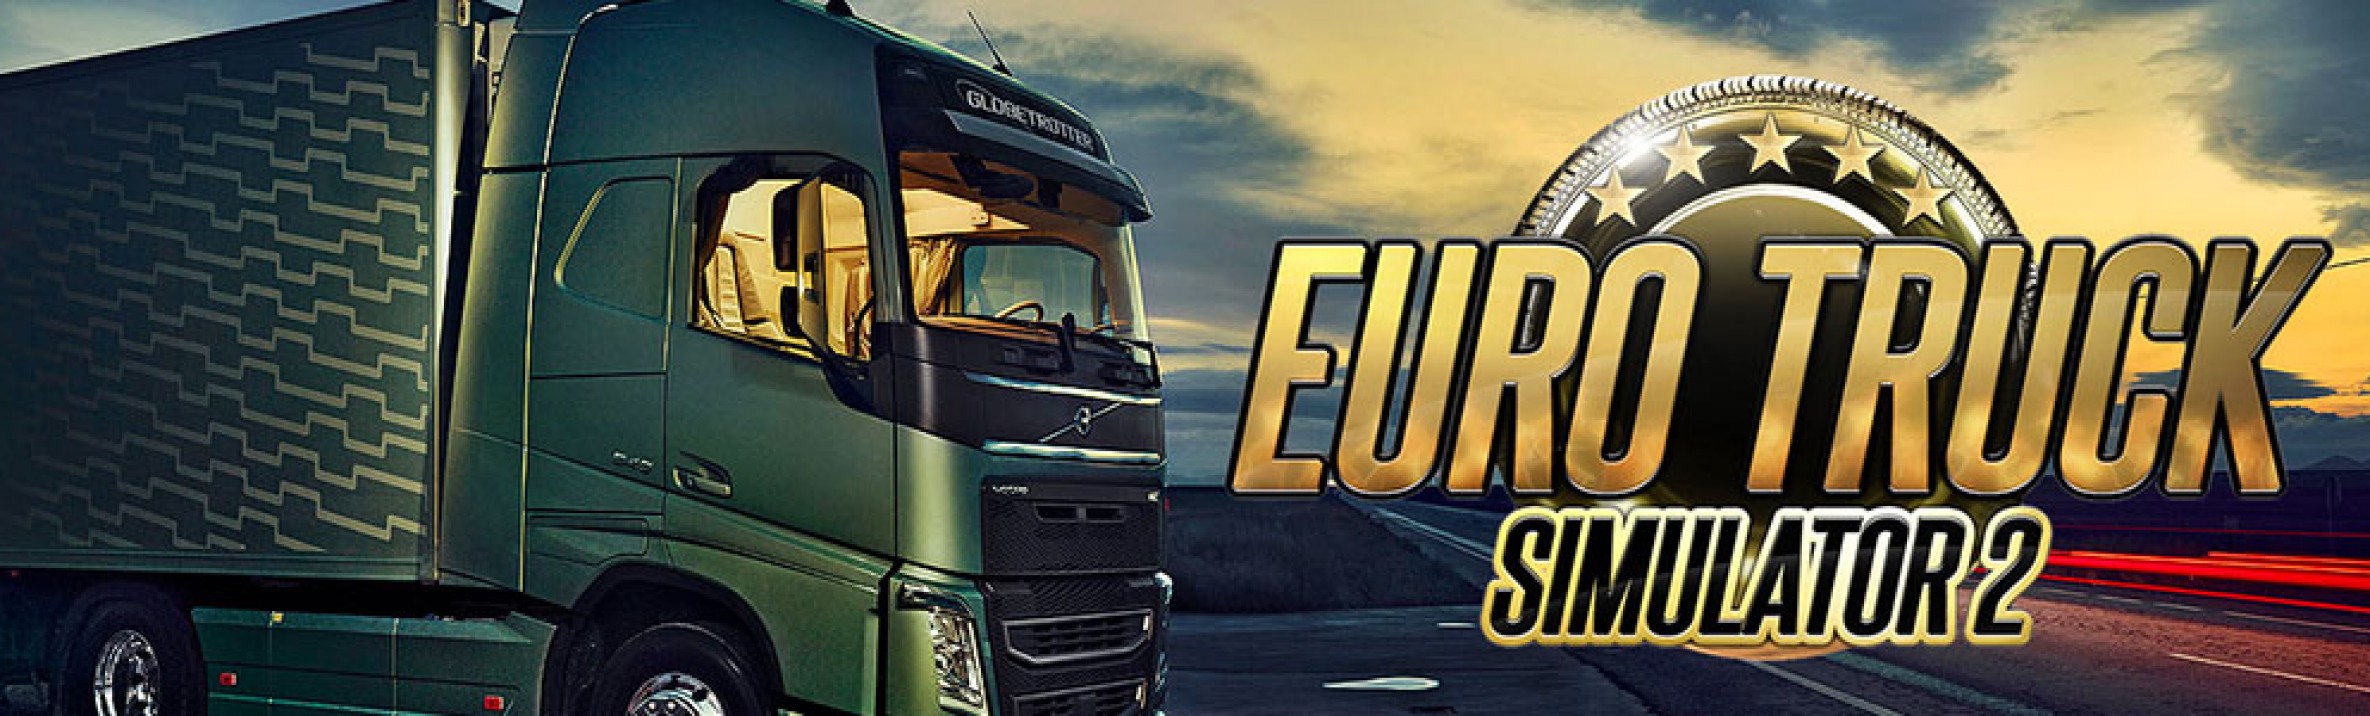 euro truck simulator 2 mac mega